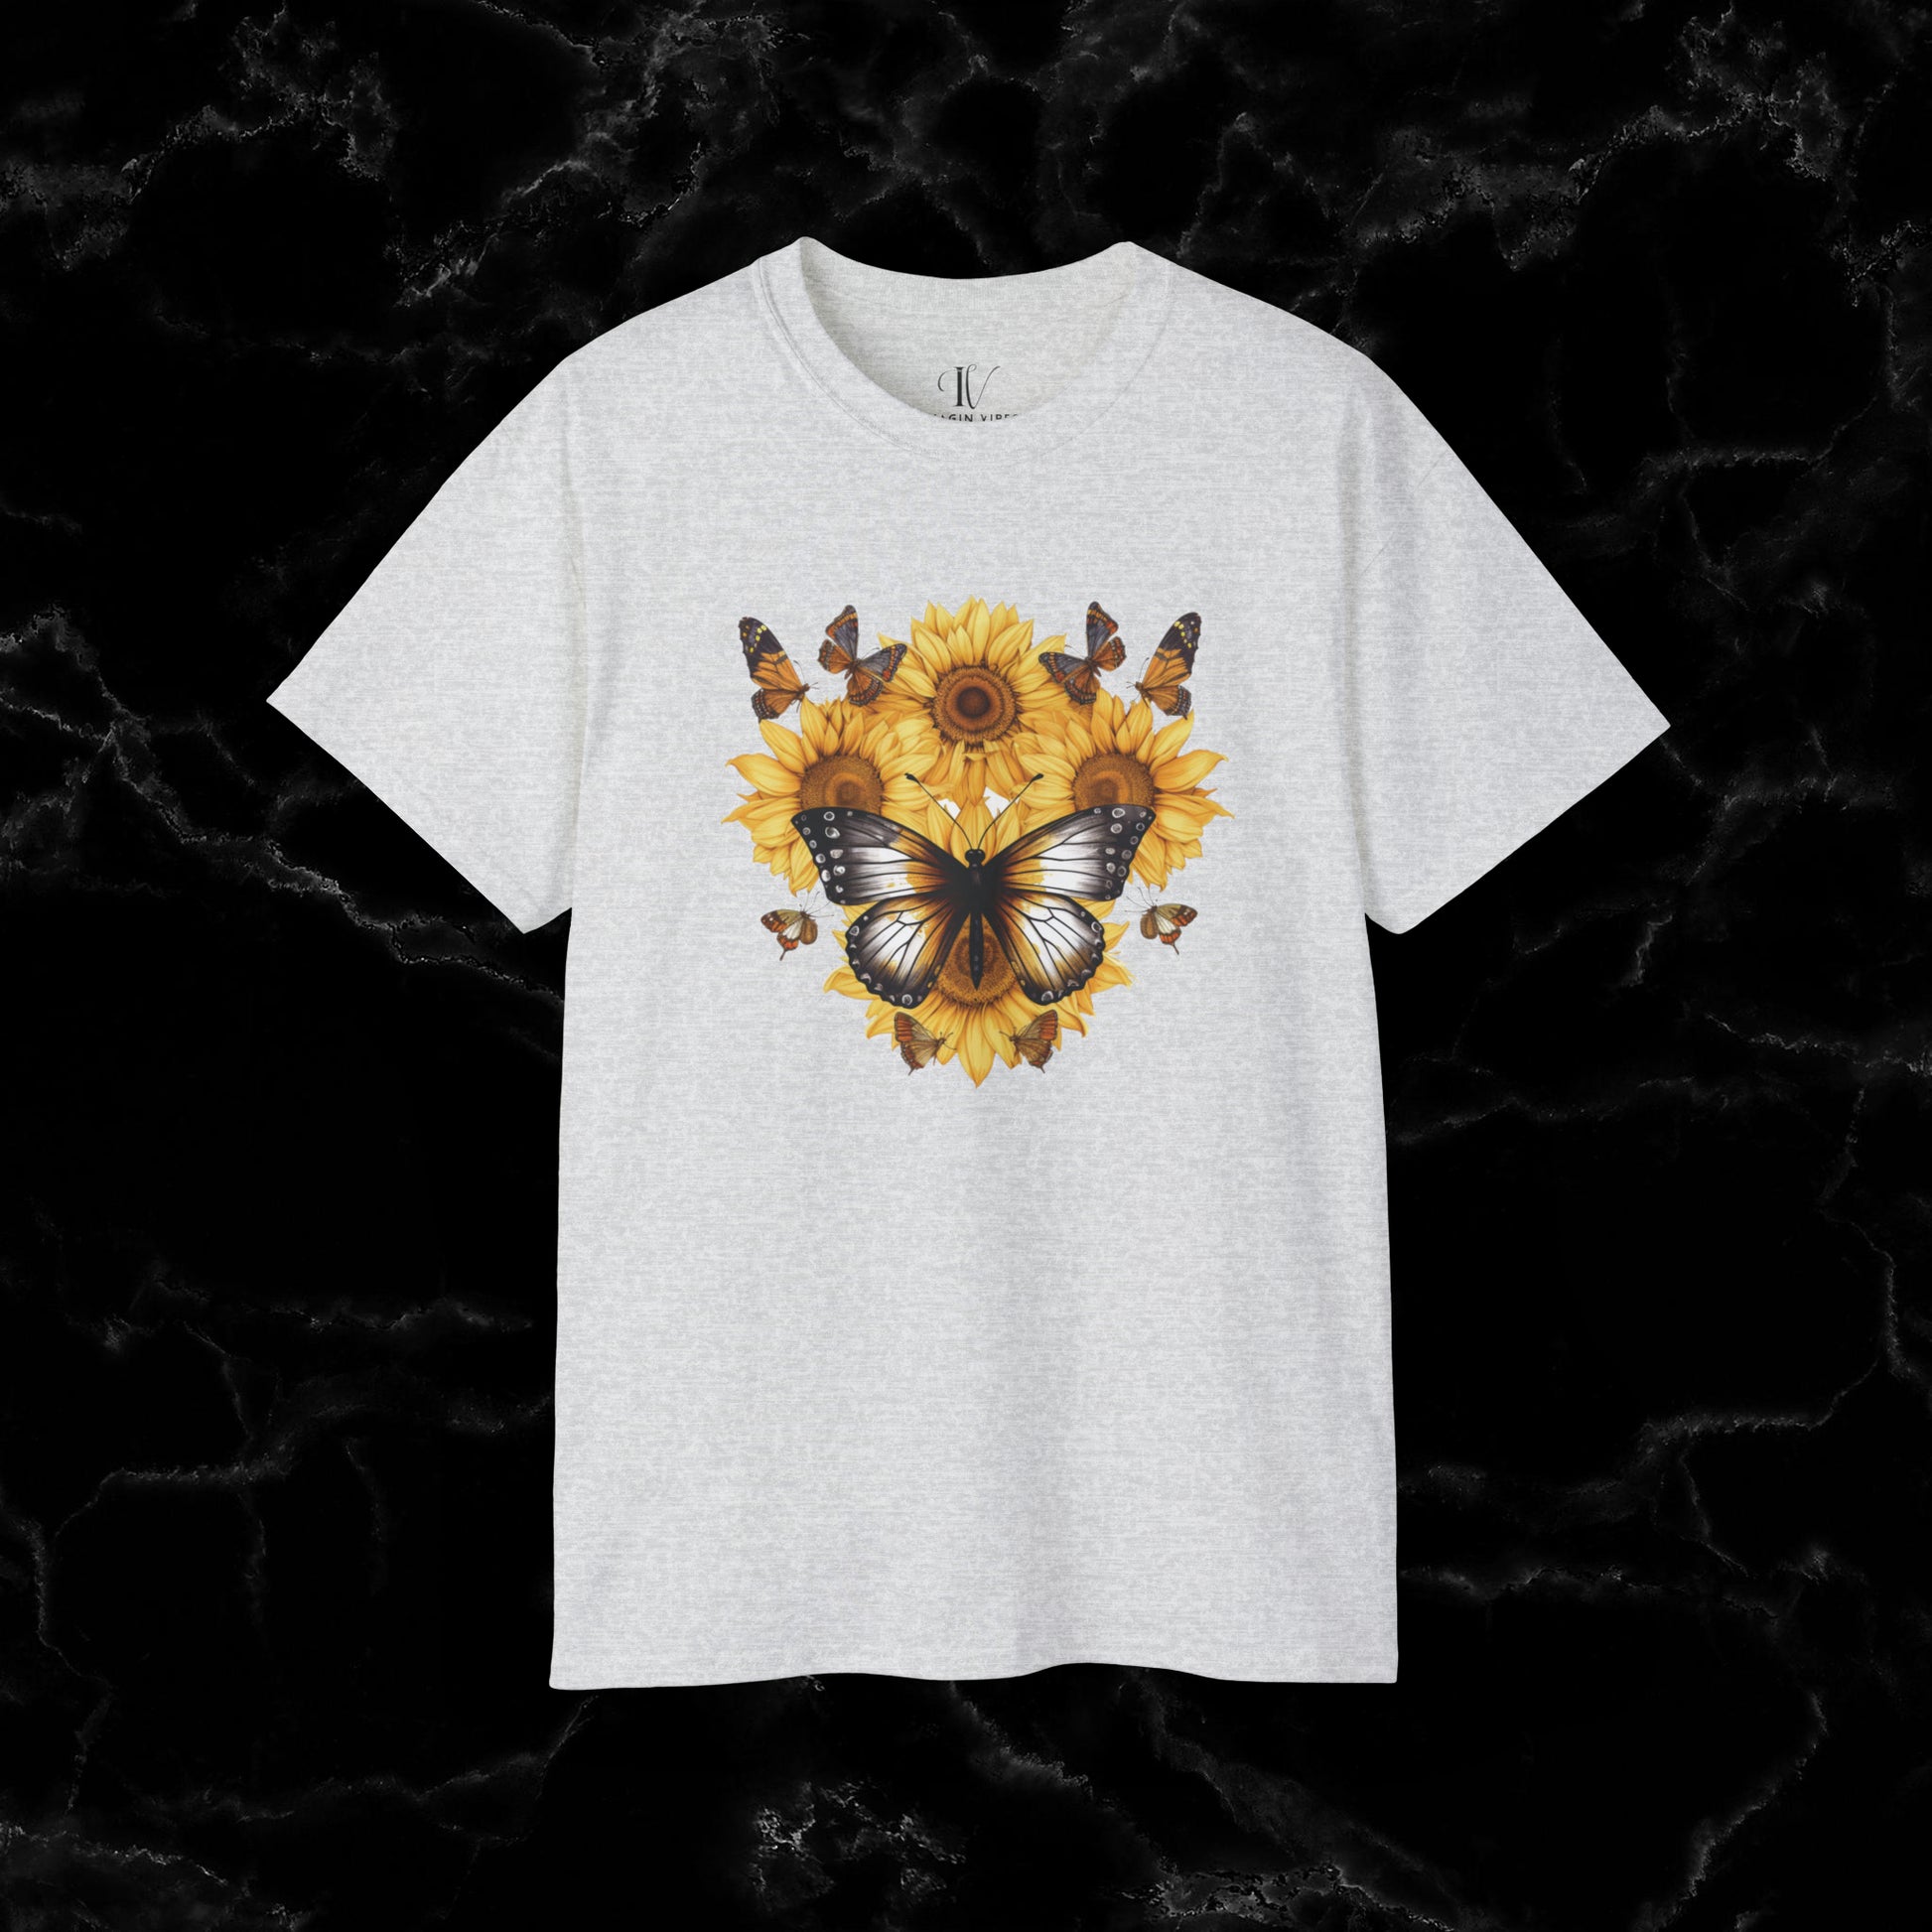 Sunflower Shirt - A Floral Tee, Garden Shirt, and Women's Fall Shirt with Nature-Inspired Design T-Shirt Ash S 